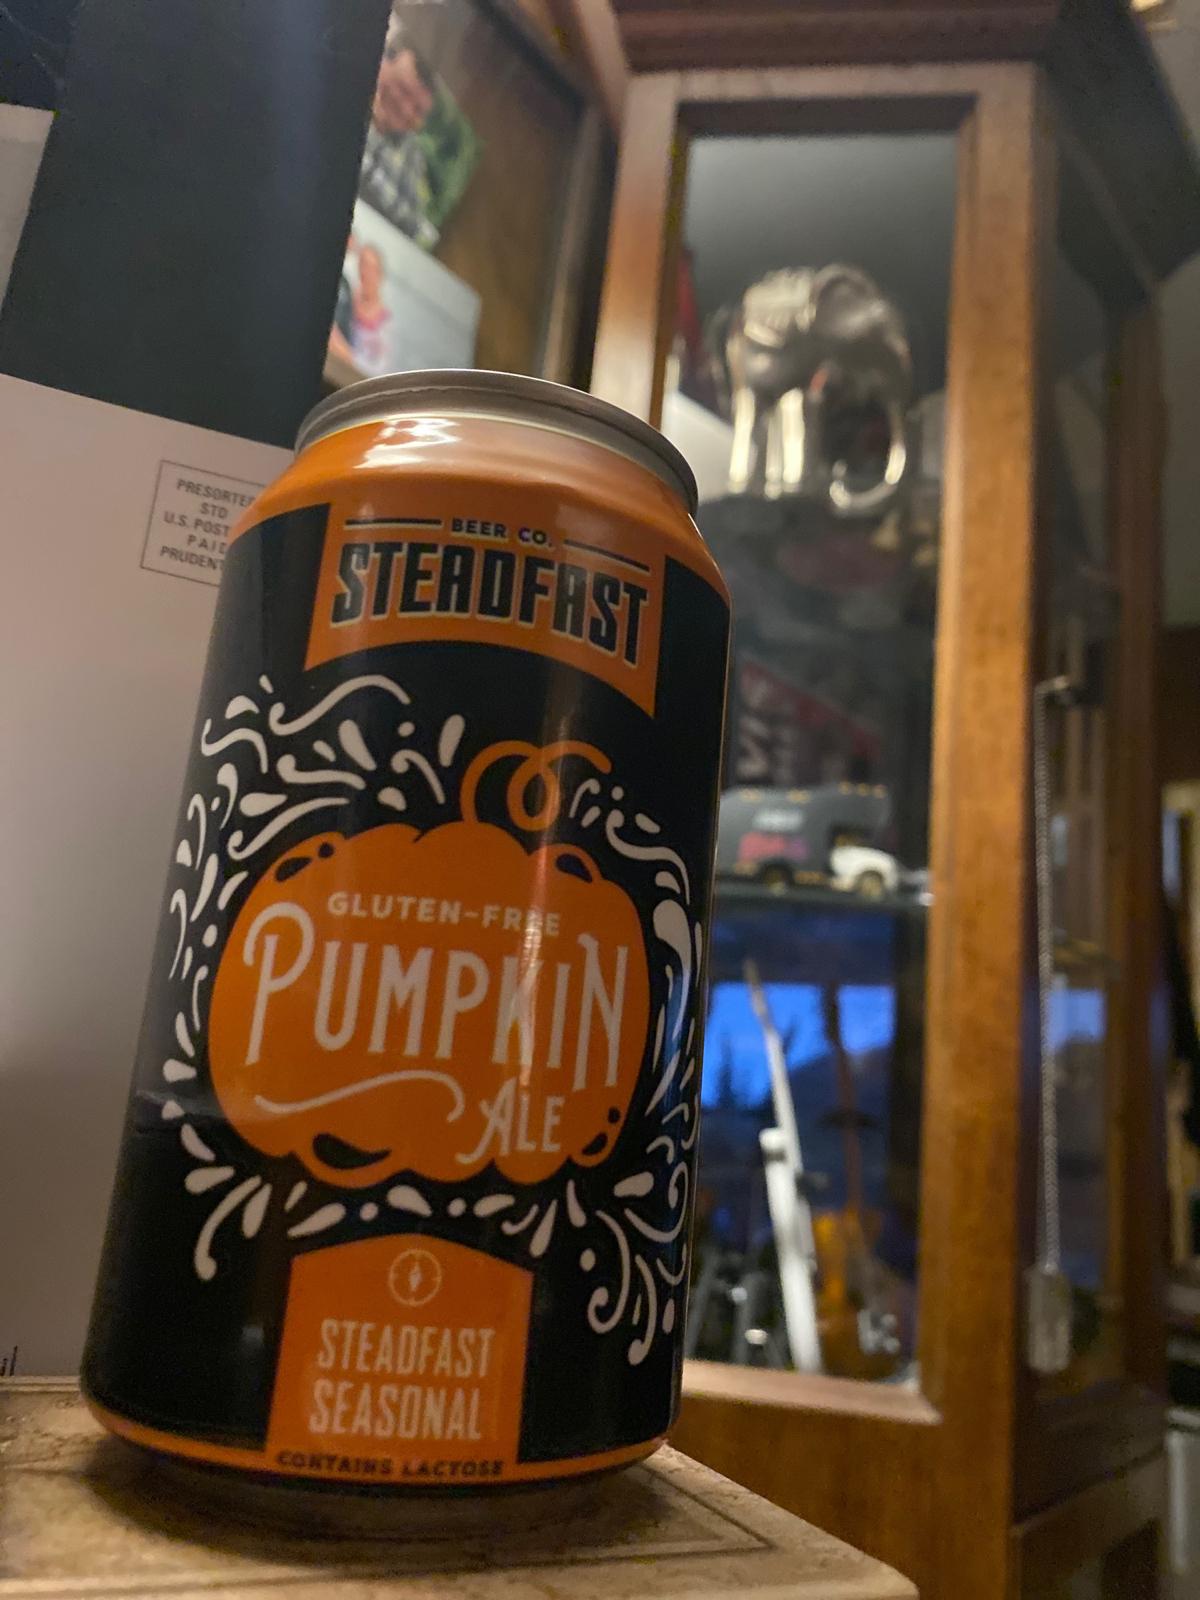 Steadfast Pumpkin Spice Ale